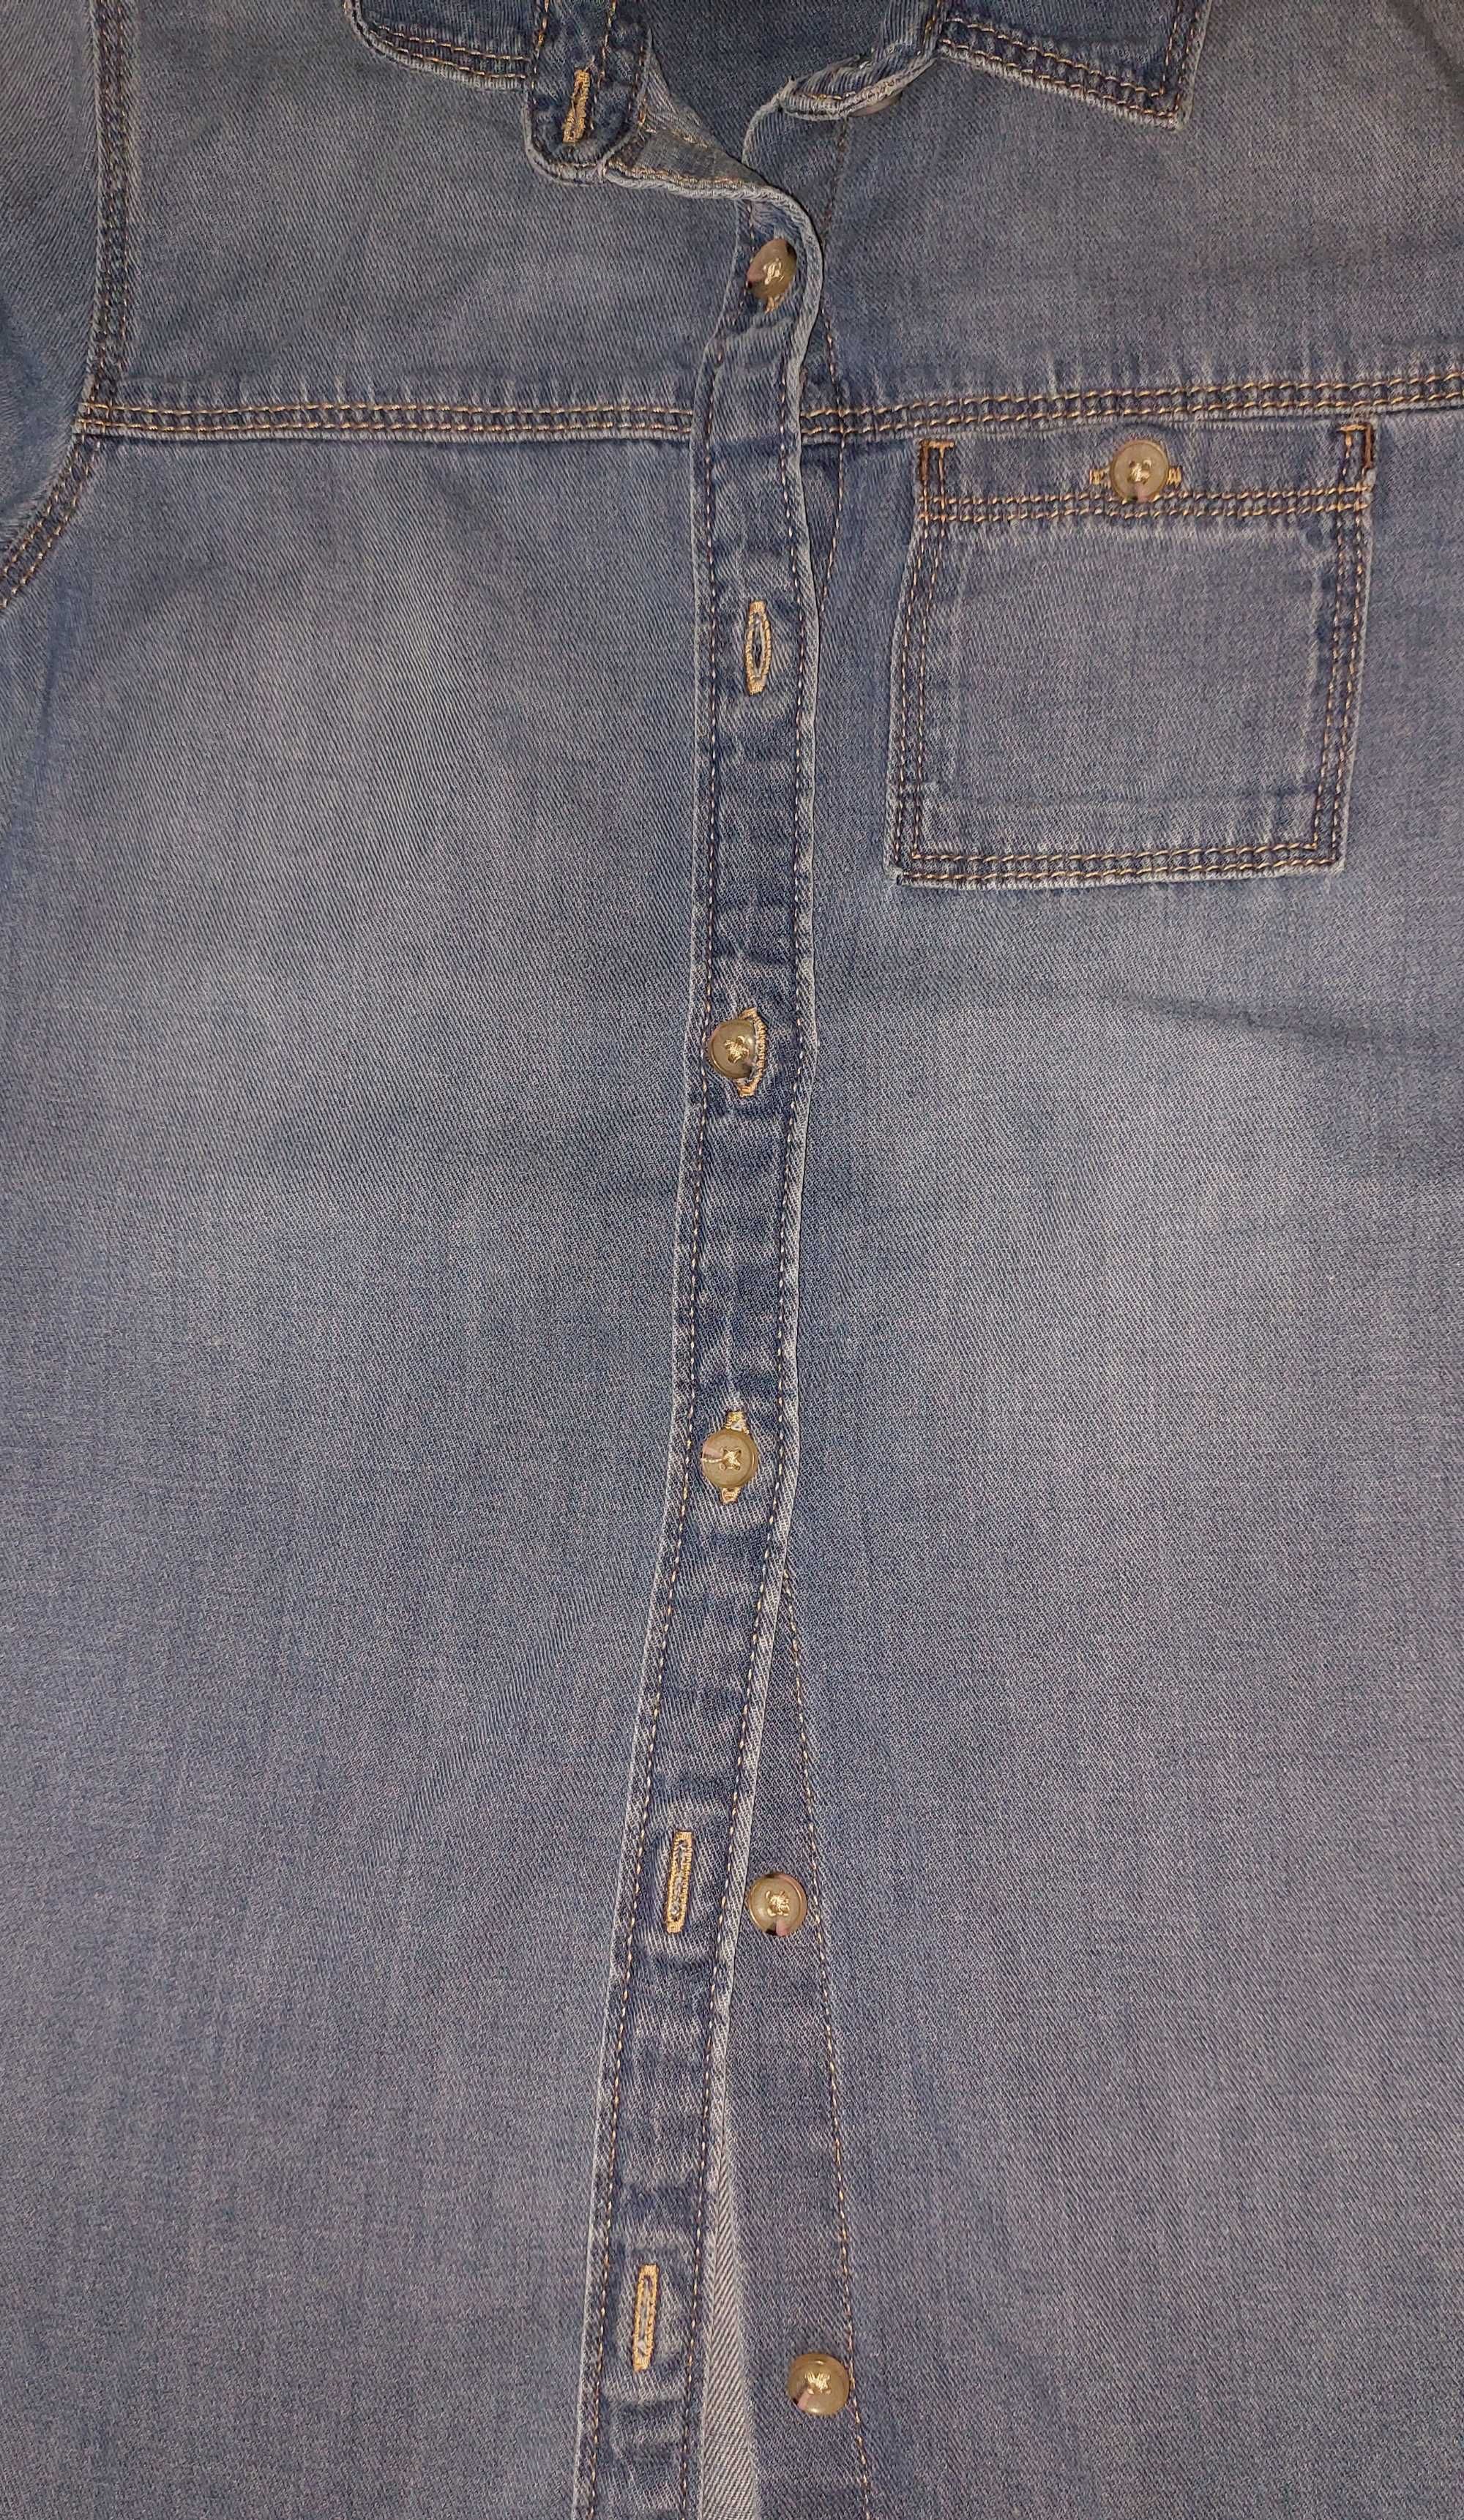 Next, Koszula jeansowa/tunika dla dziewczynki rozmiar 104/110